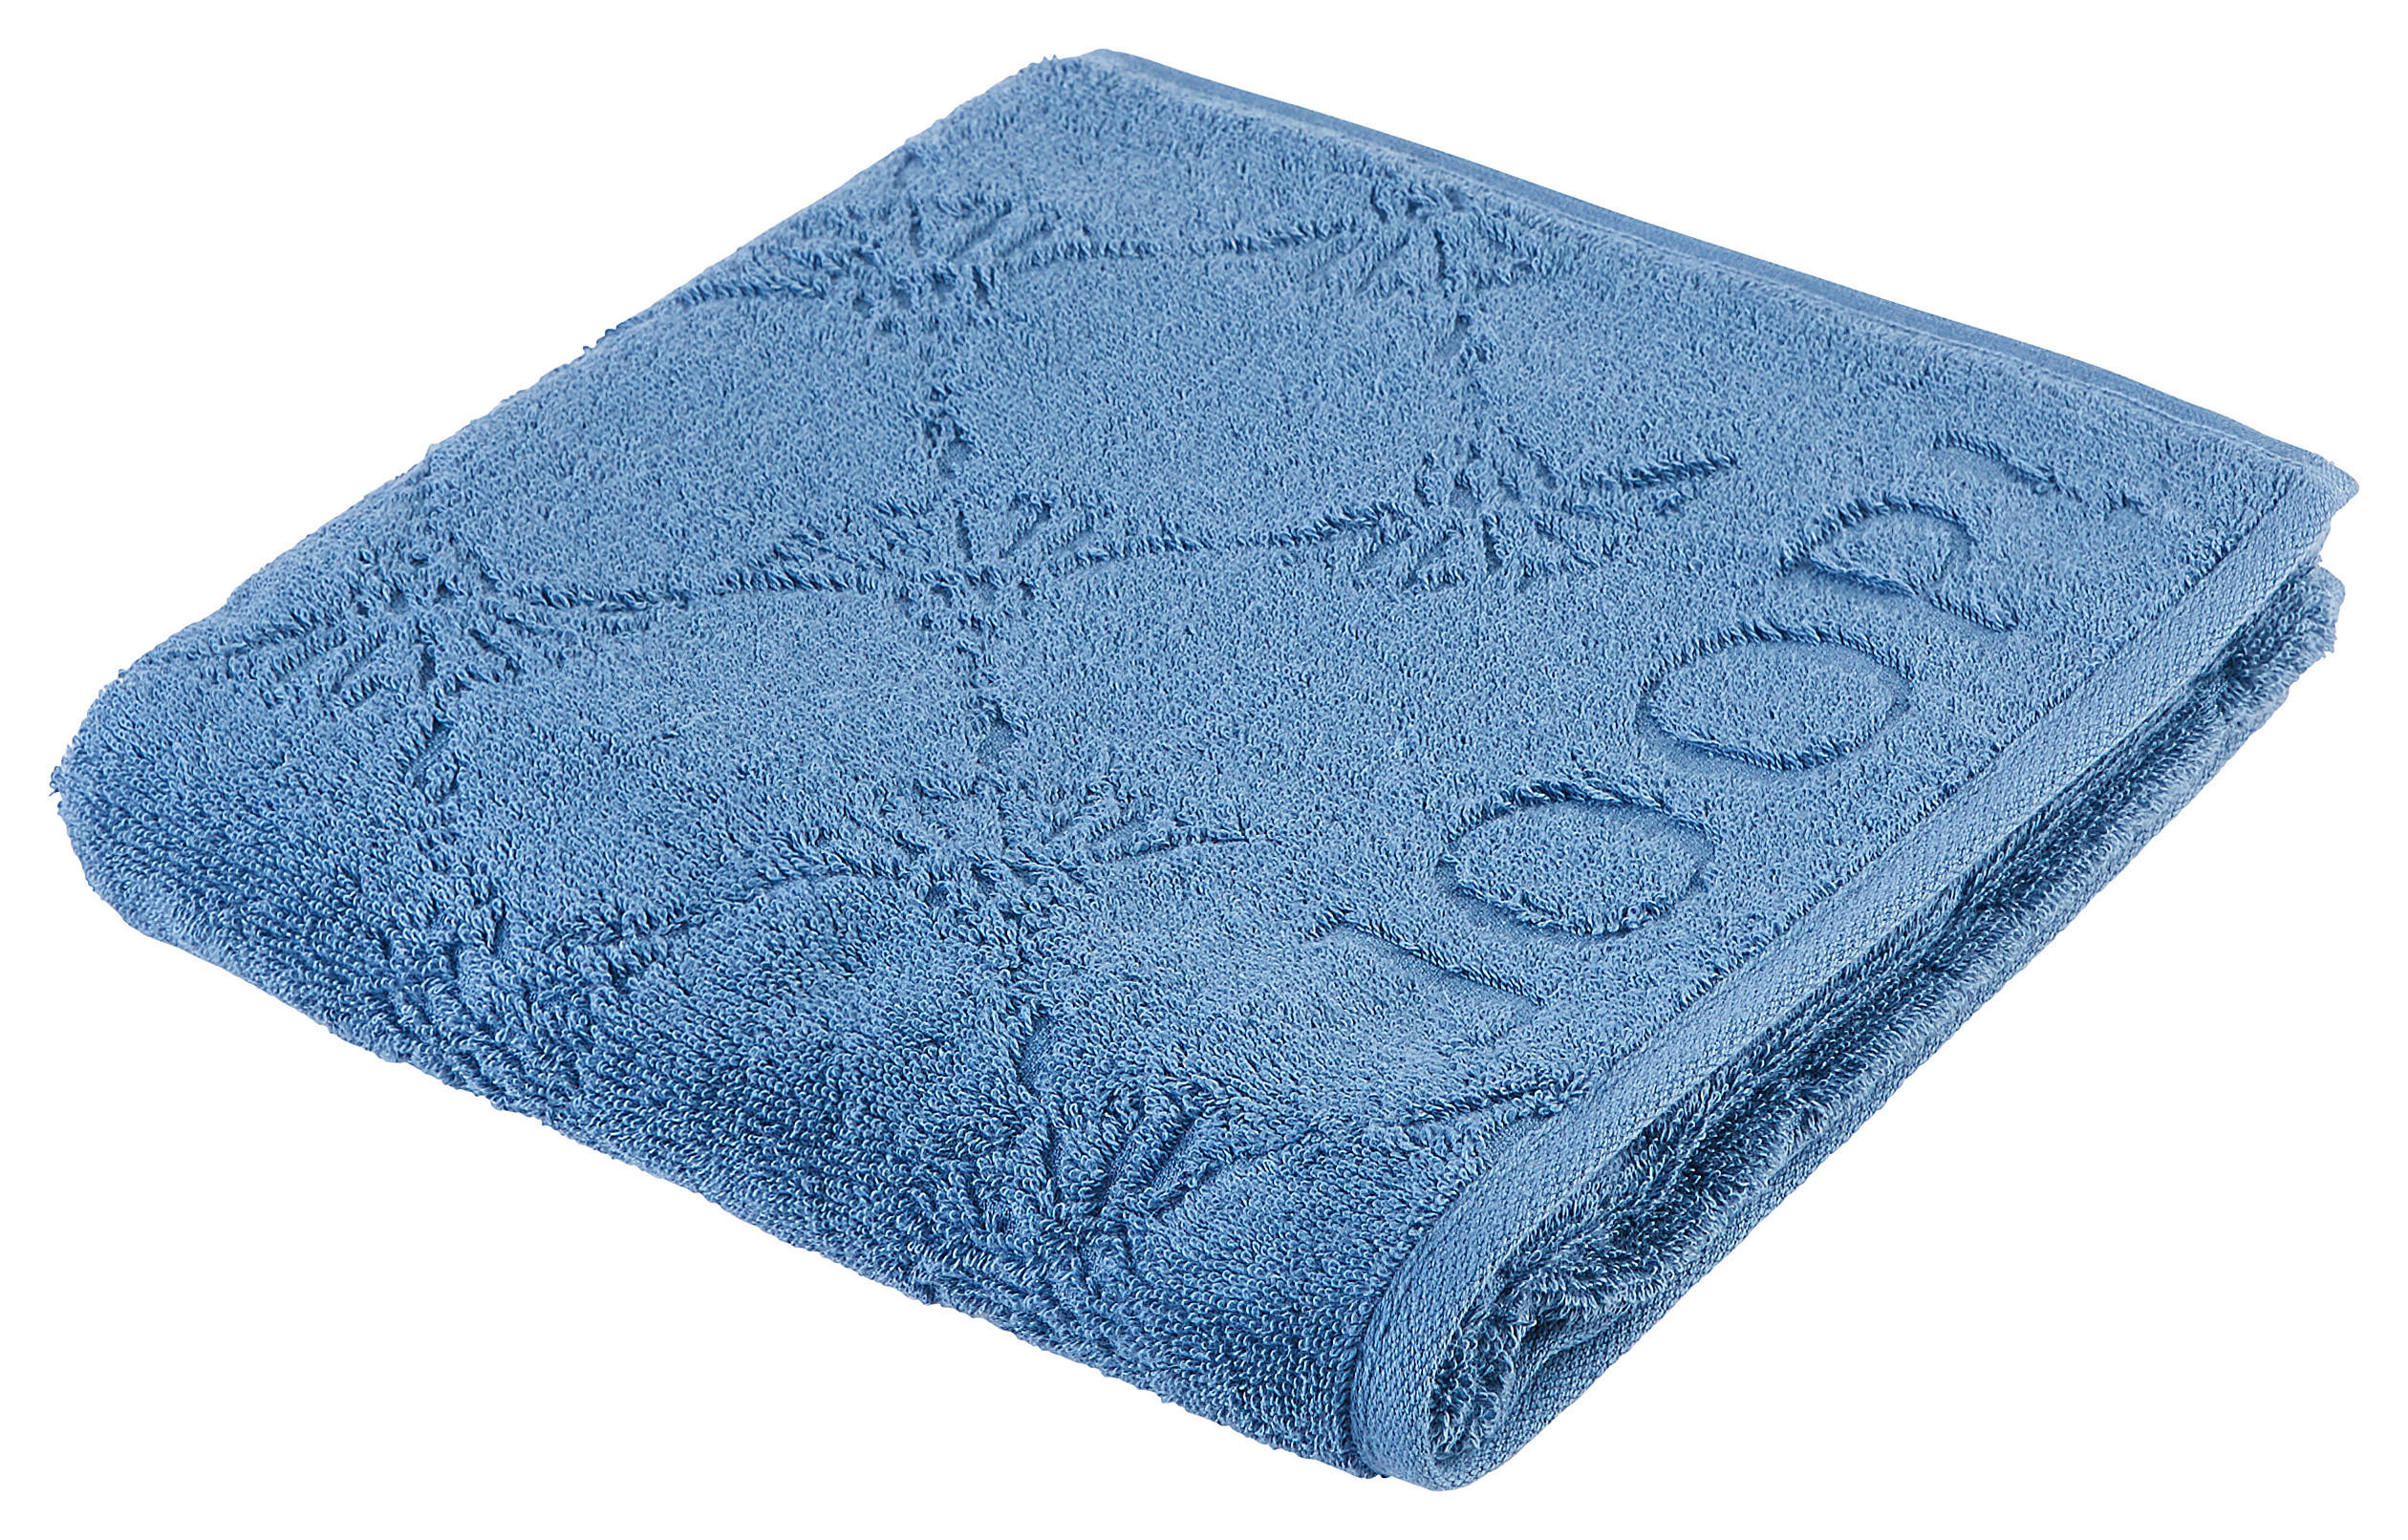 HANDTUCH Uni Cornflower  - Blau, Design, Textil (50/100cm) - Joop!